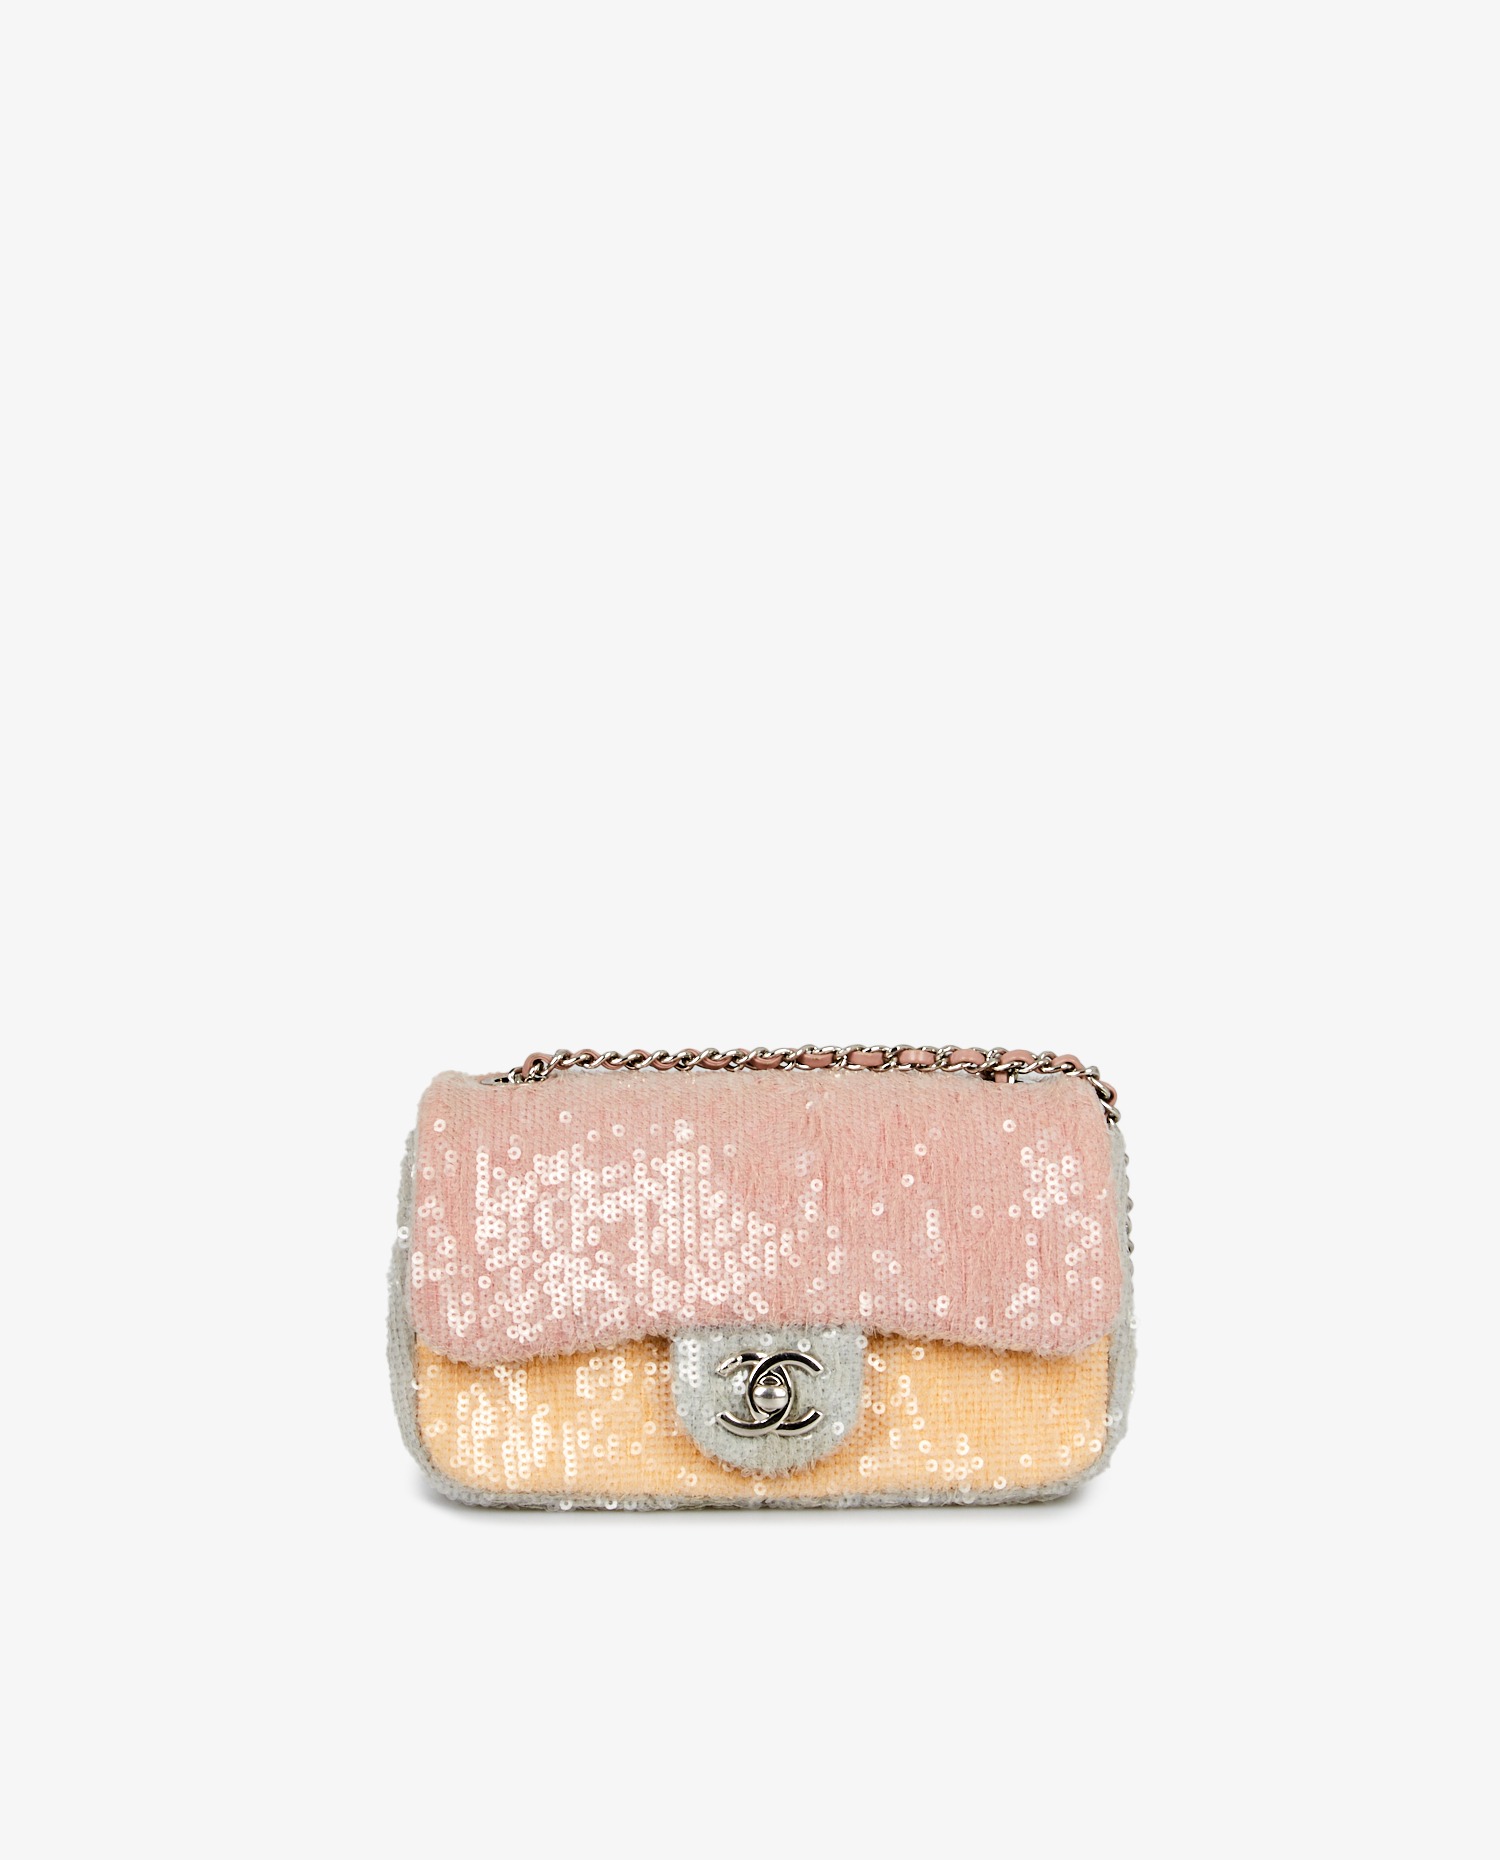 Mini sac Chanel classique